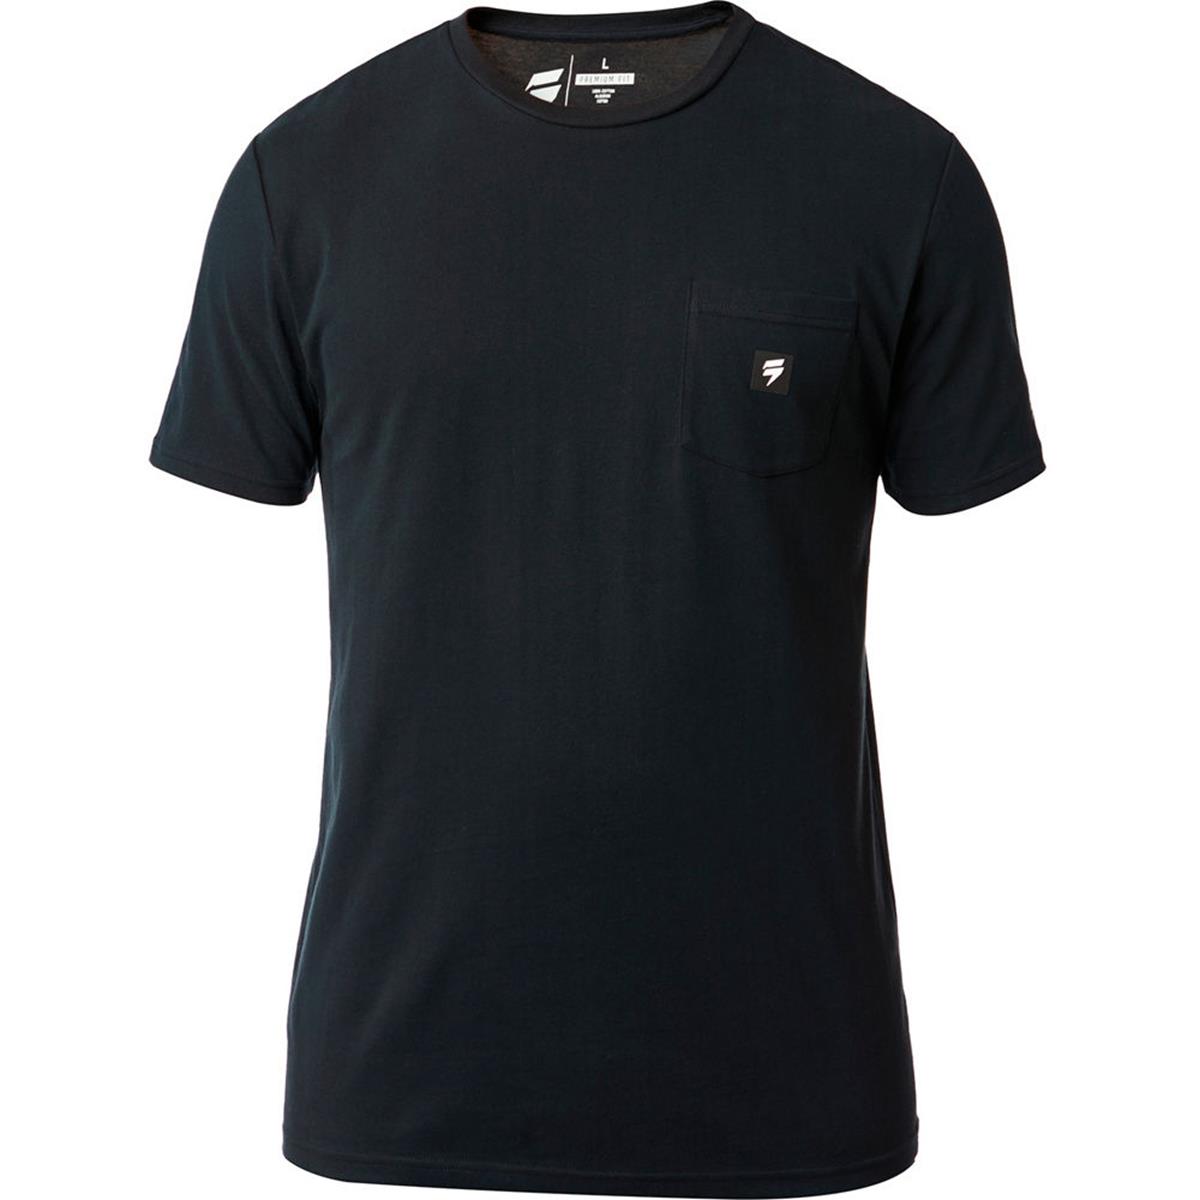 Shift T-Shirt 3LUE Label Basalt Noir - Limited Edition